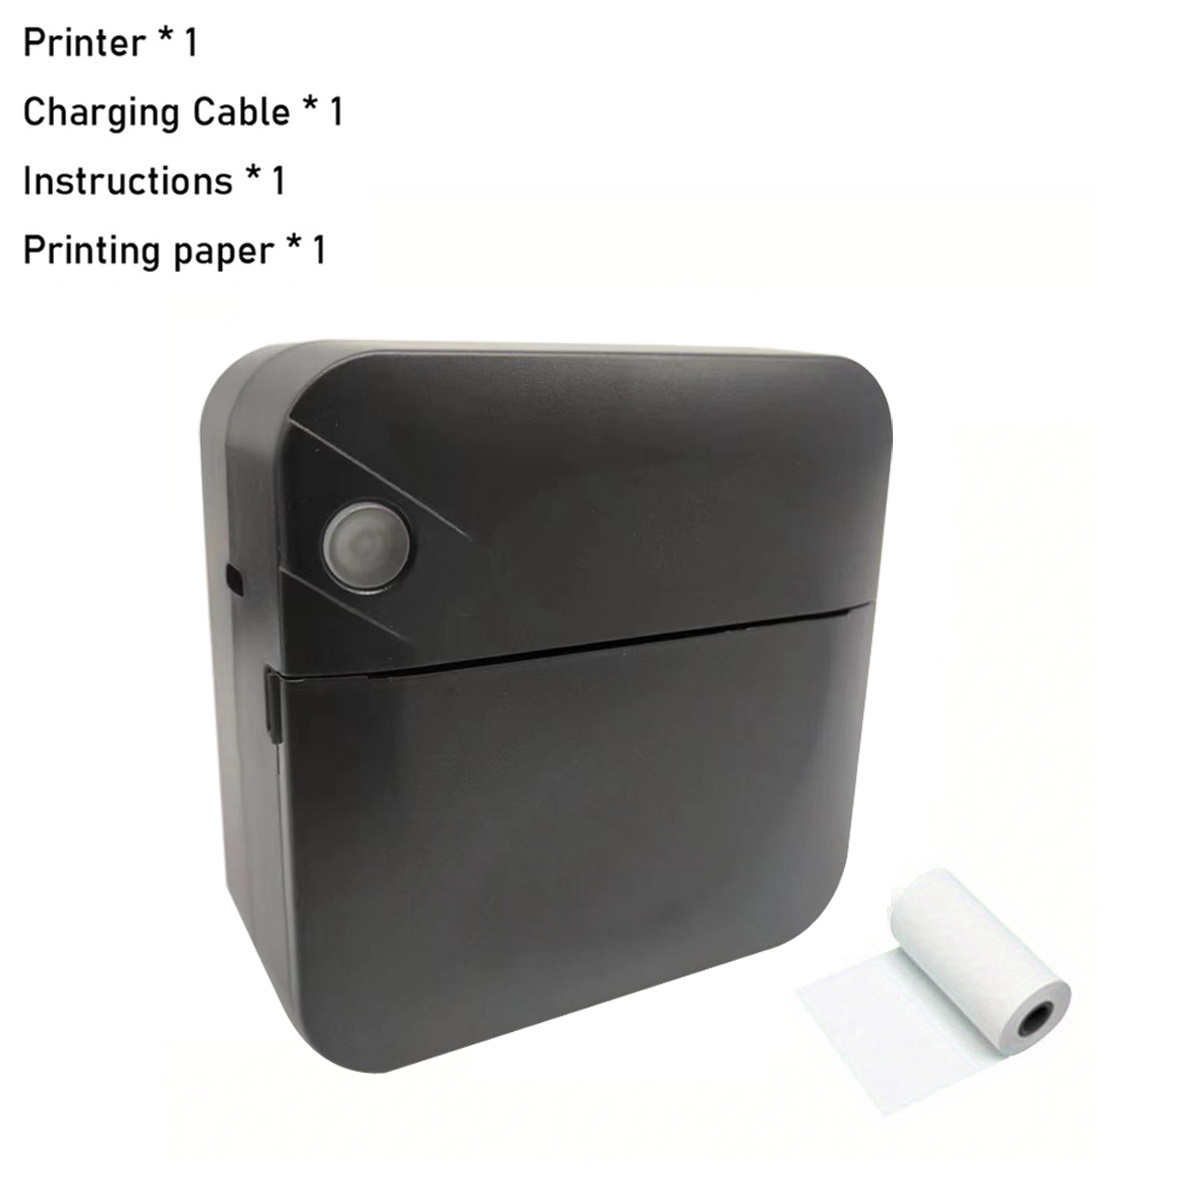 Une imprimante photo portable qui fonctionne sans encre, ou presque